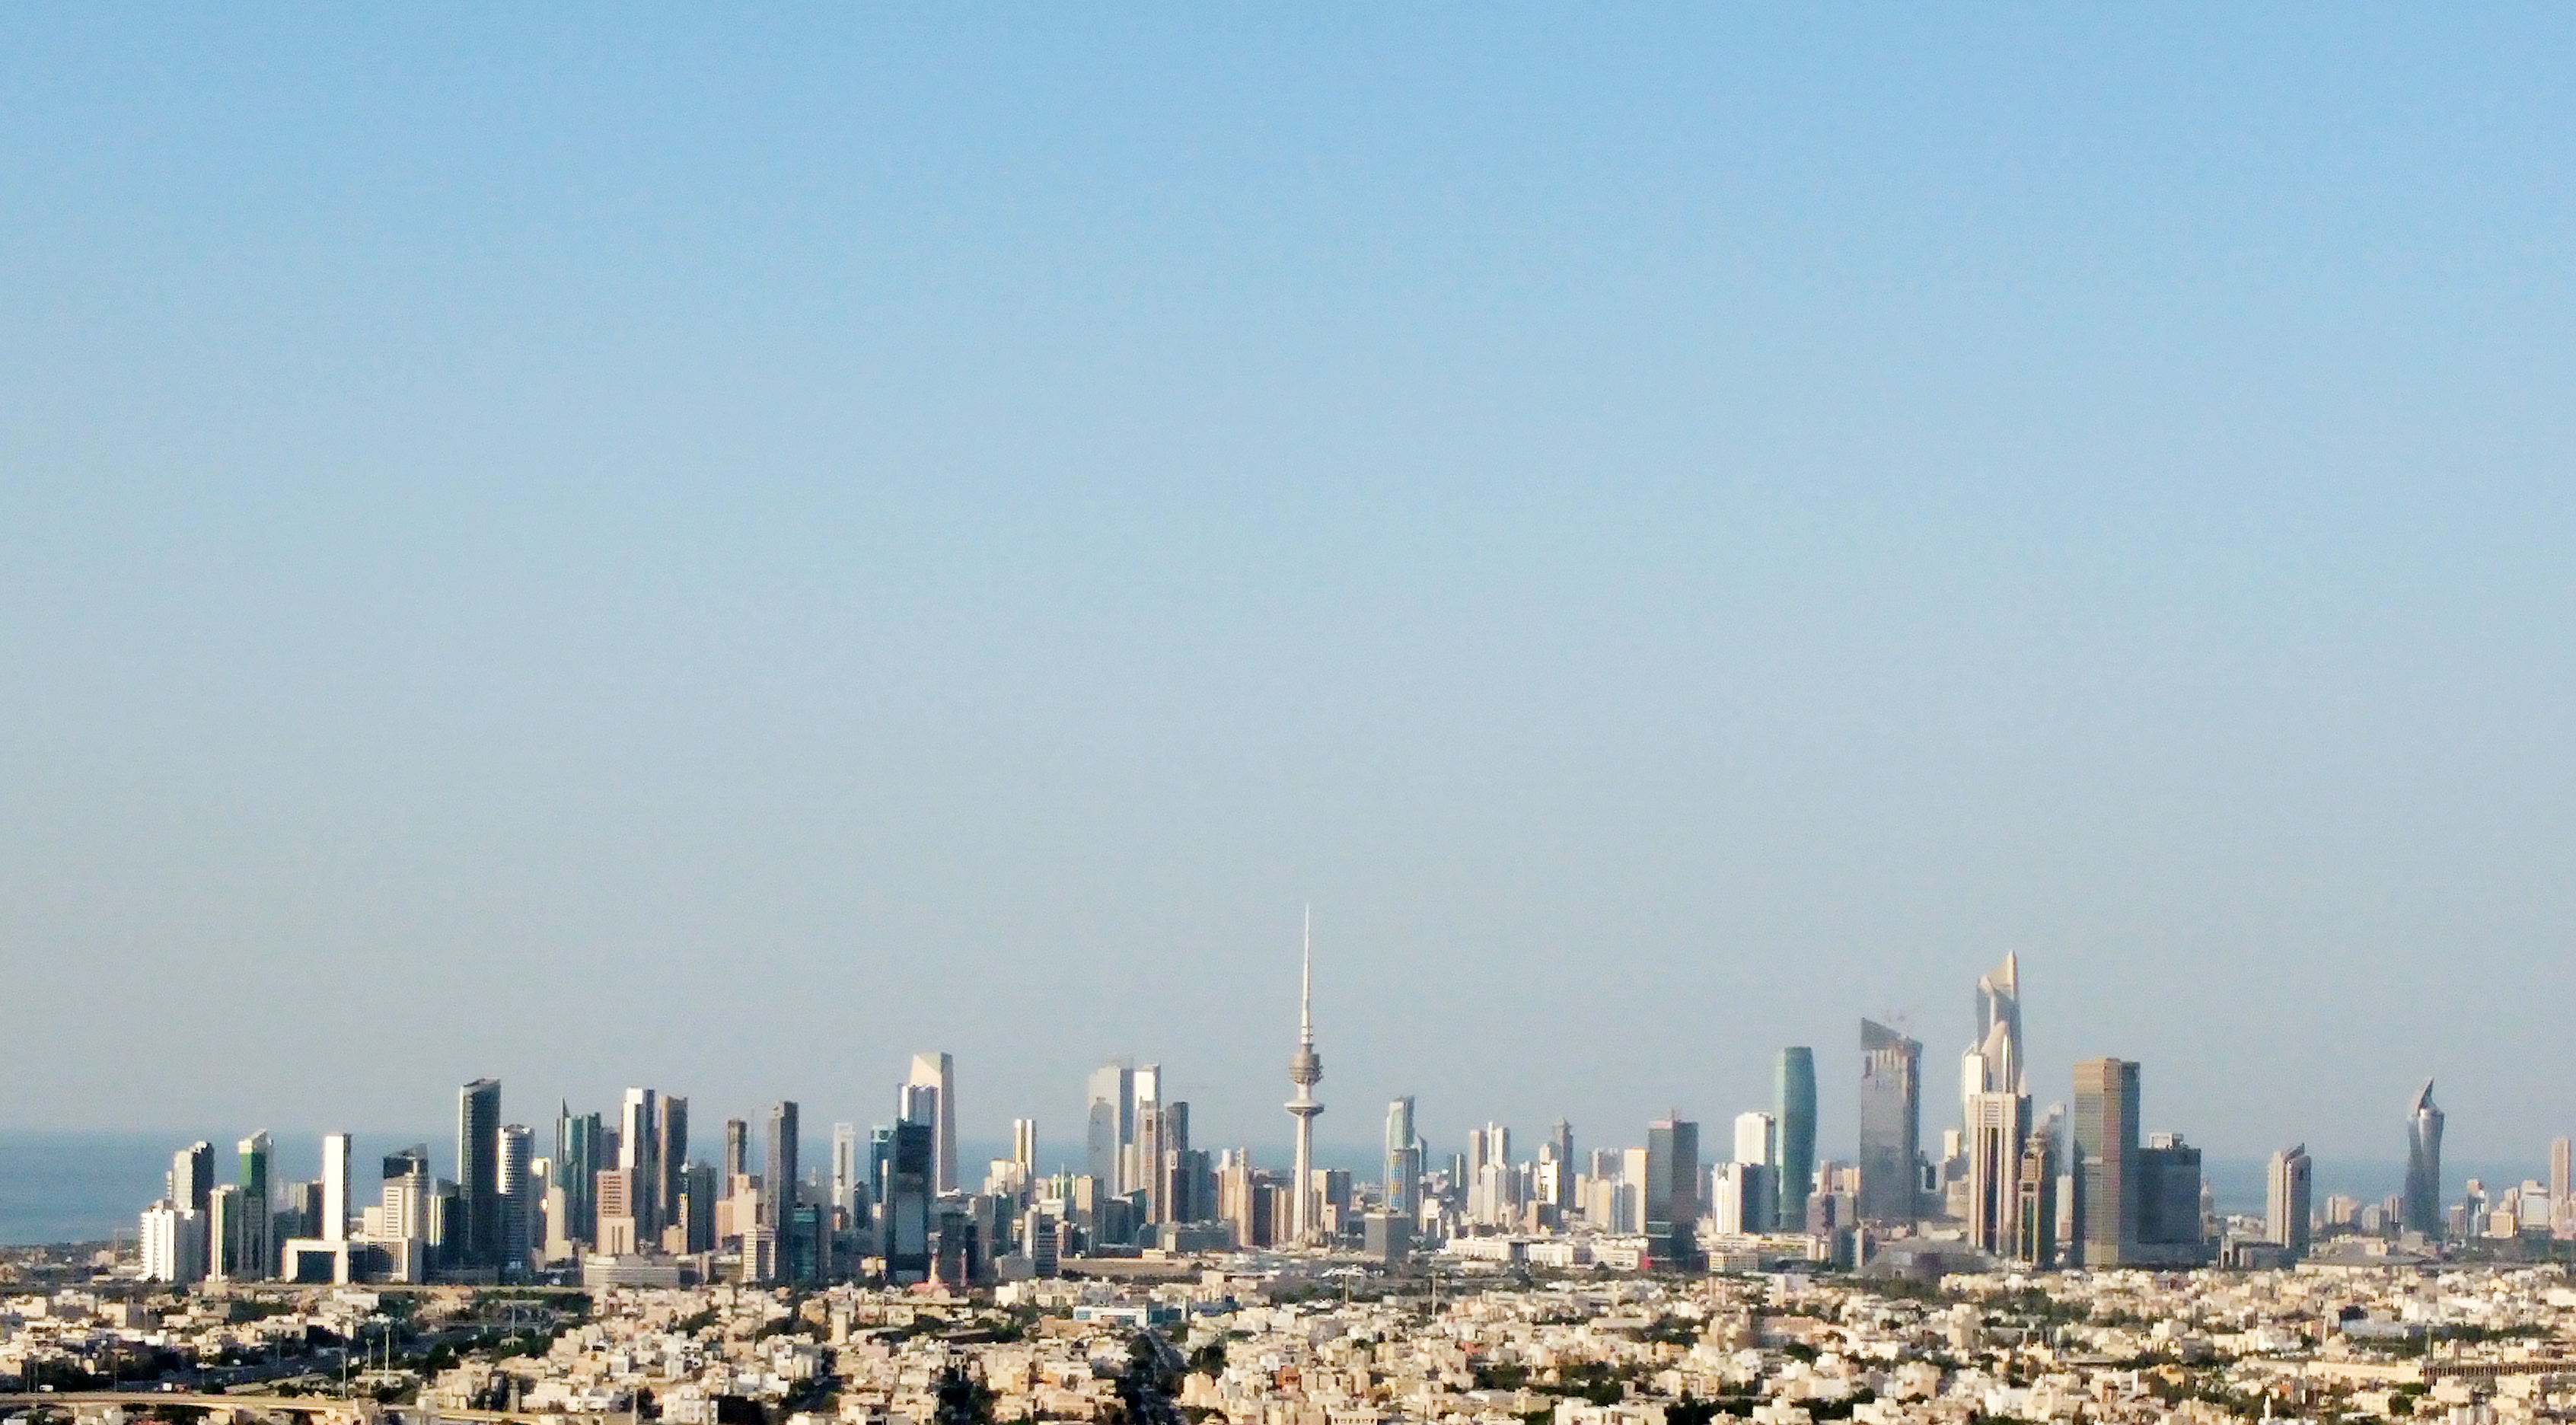 KUWAIT: A distant view of the Kuwait skyline. - Photo by Yasser Al-Zayyatn